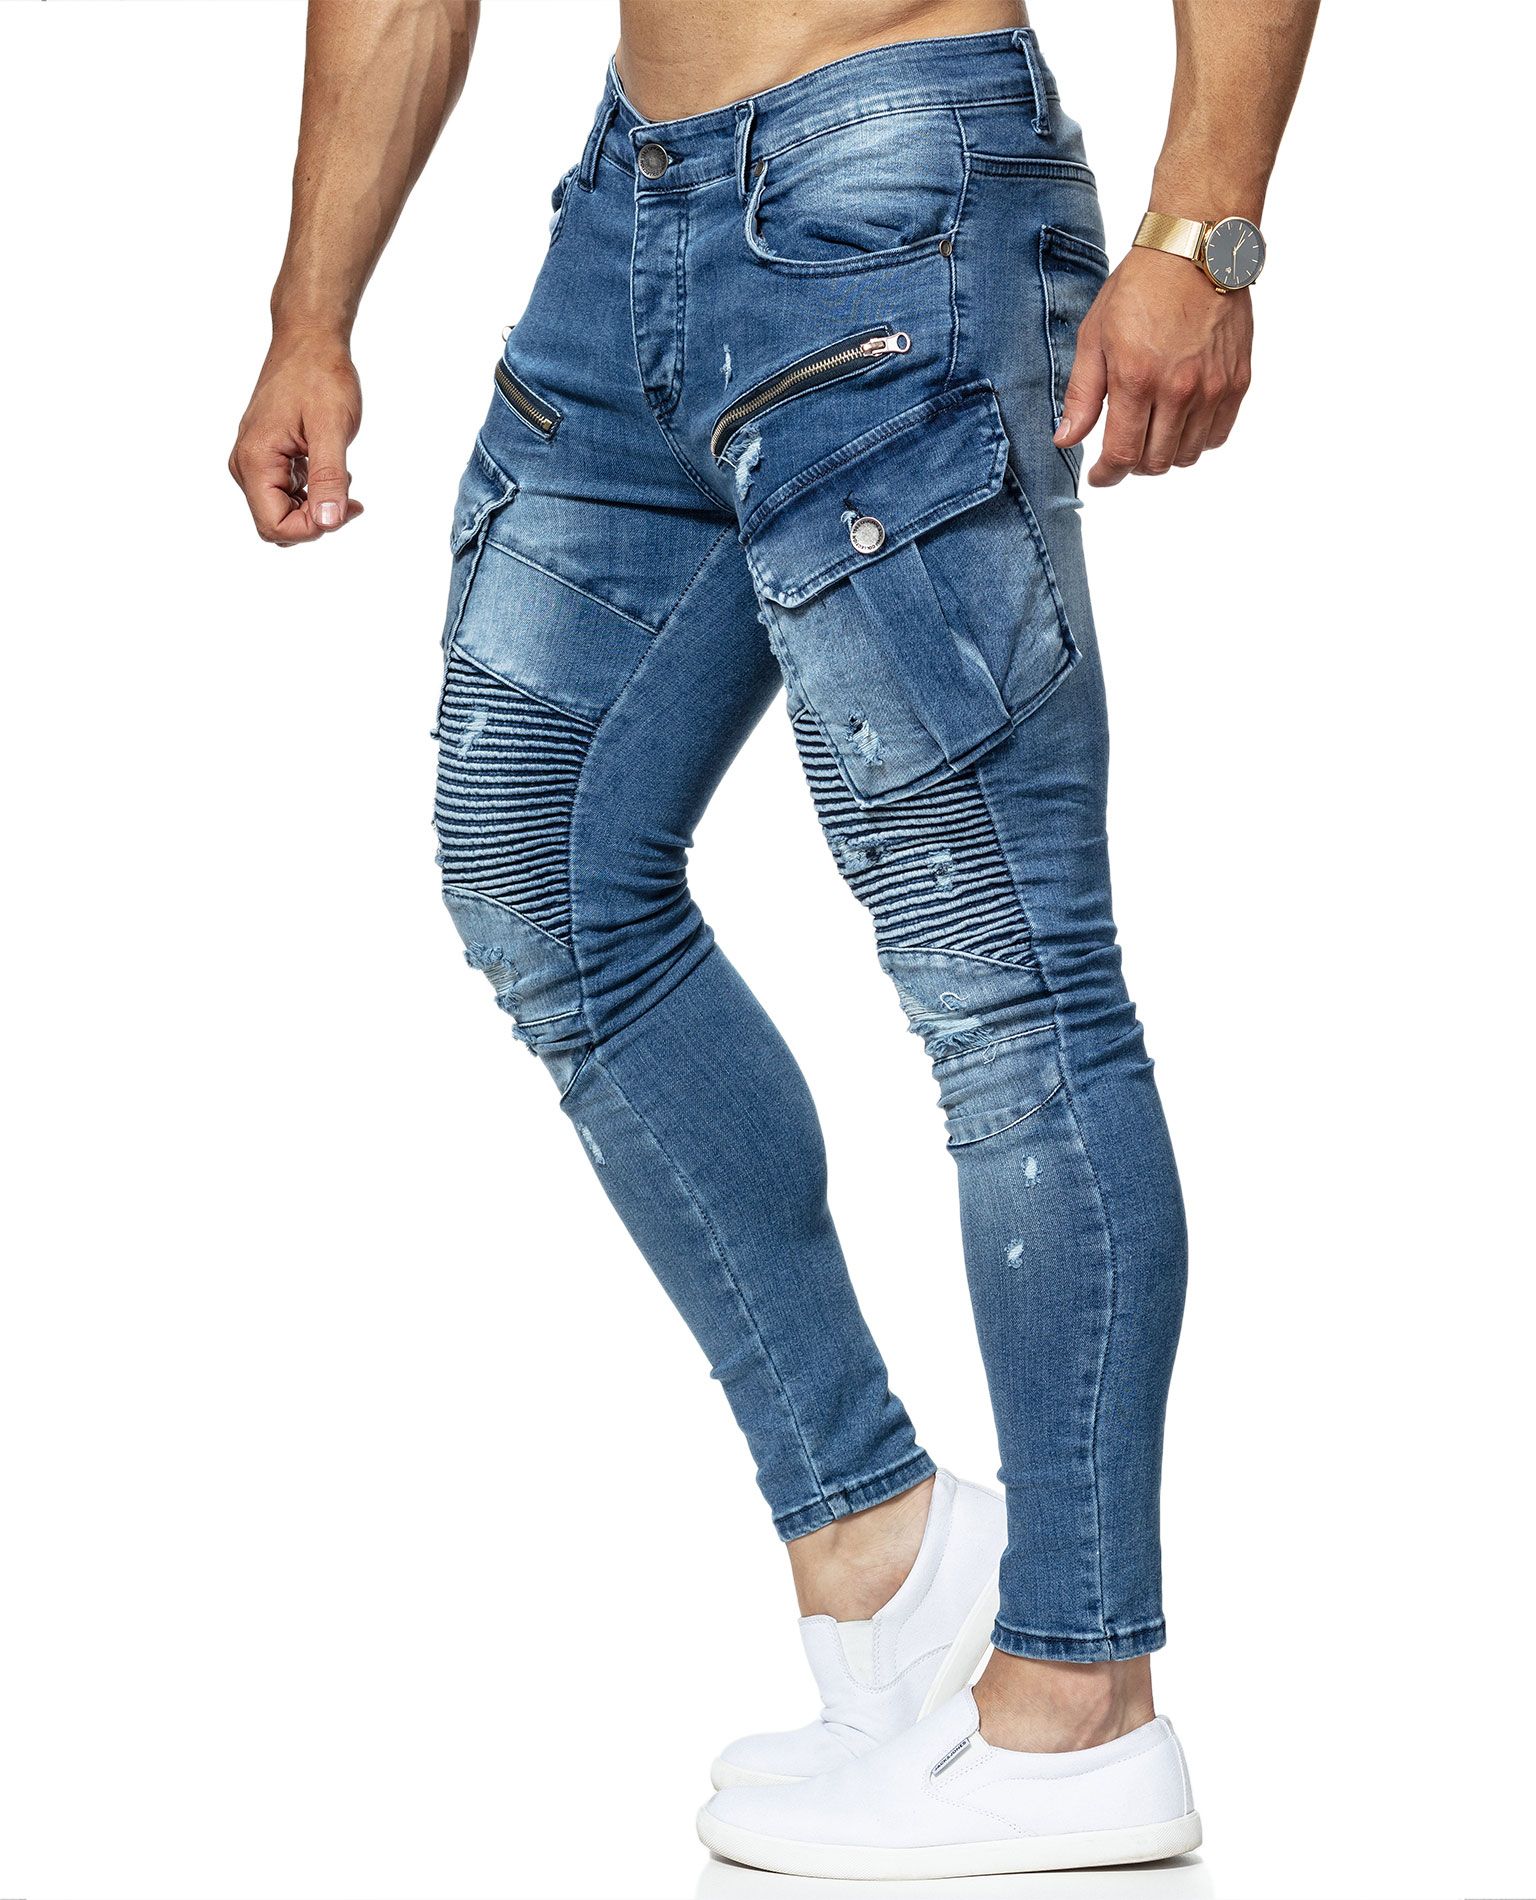 Clipsaz Jeans Blue Jerone - 8016 - Jeans - Jerone.com